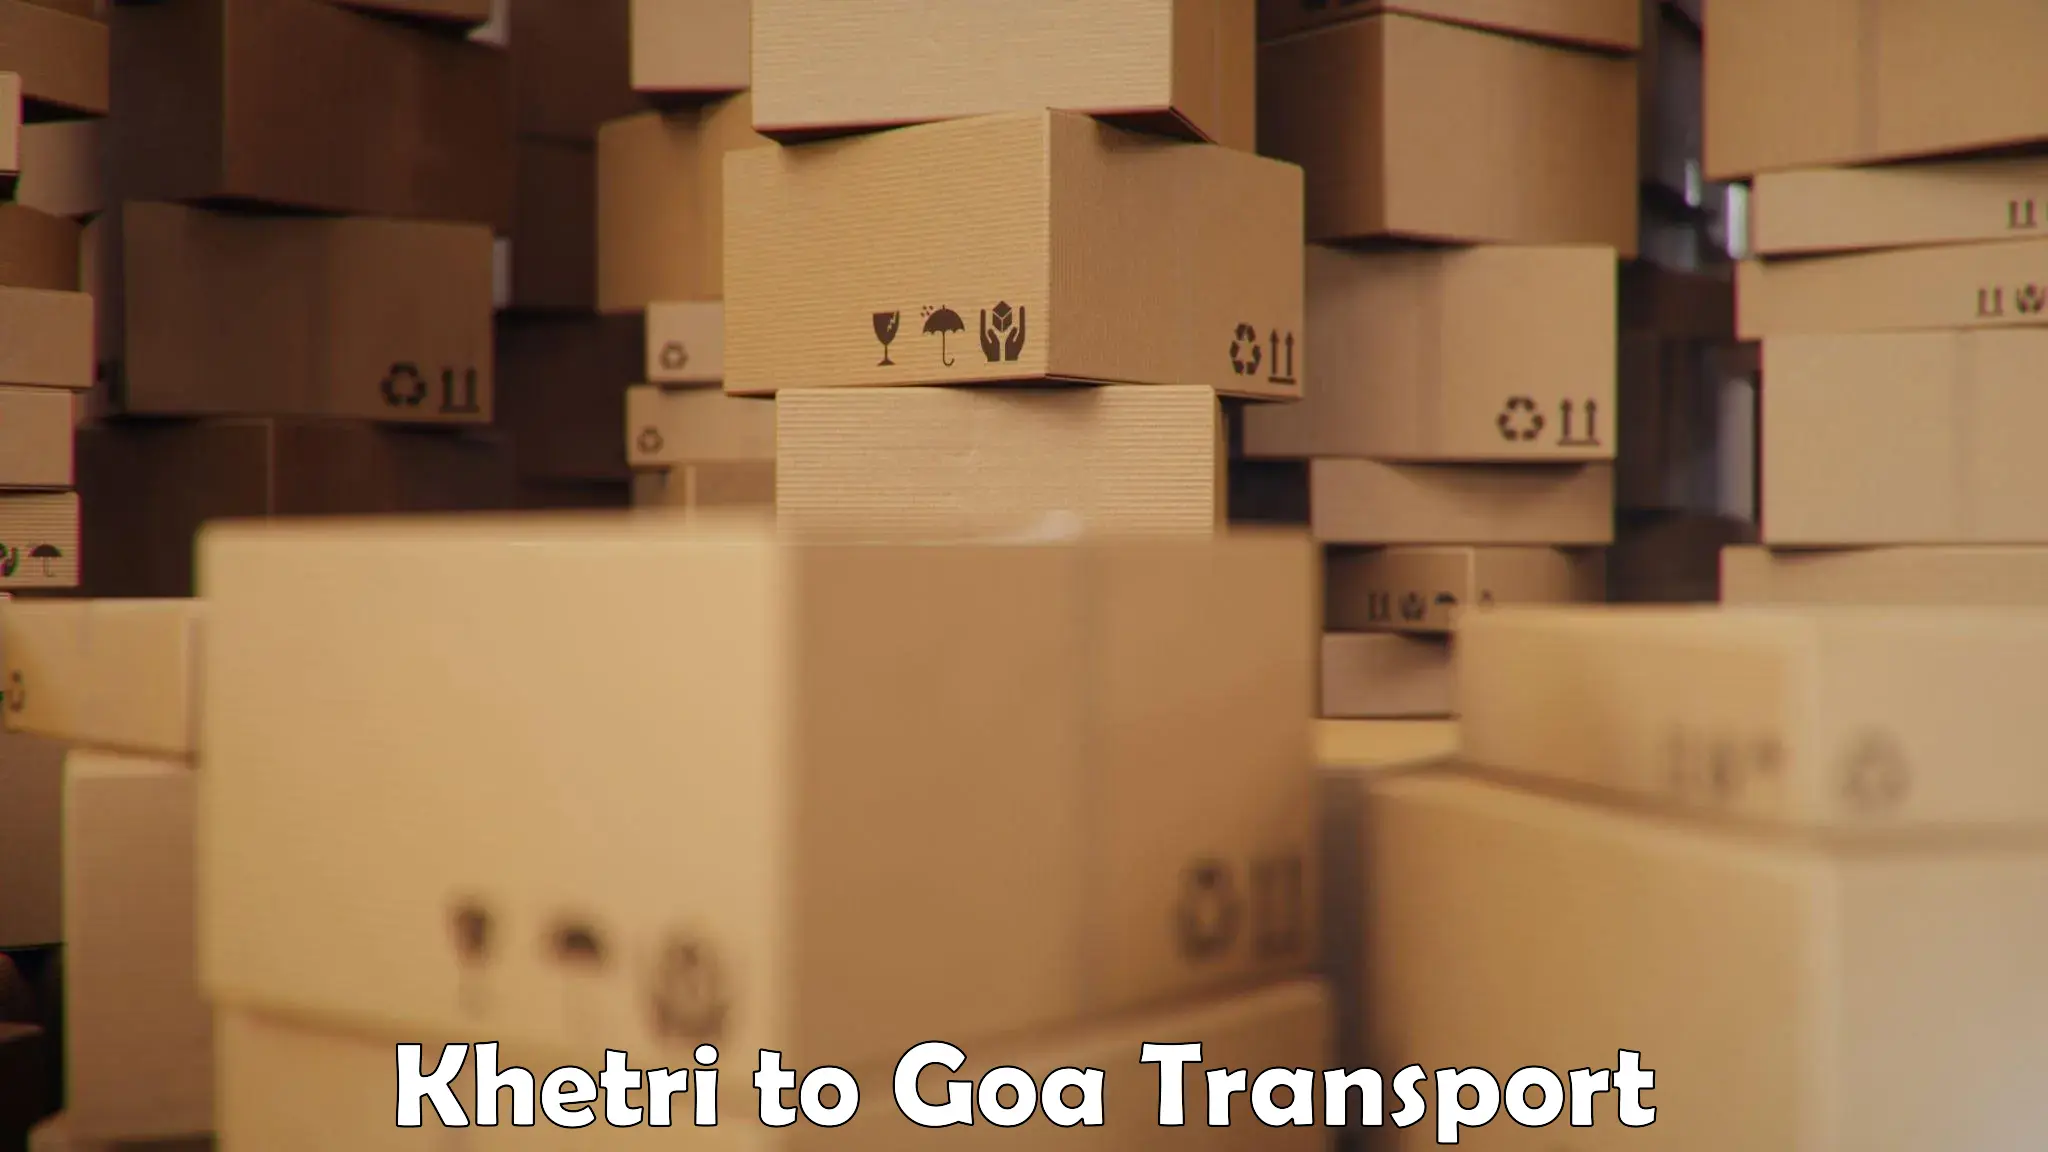 Furniture transport service in Khetri to Goa